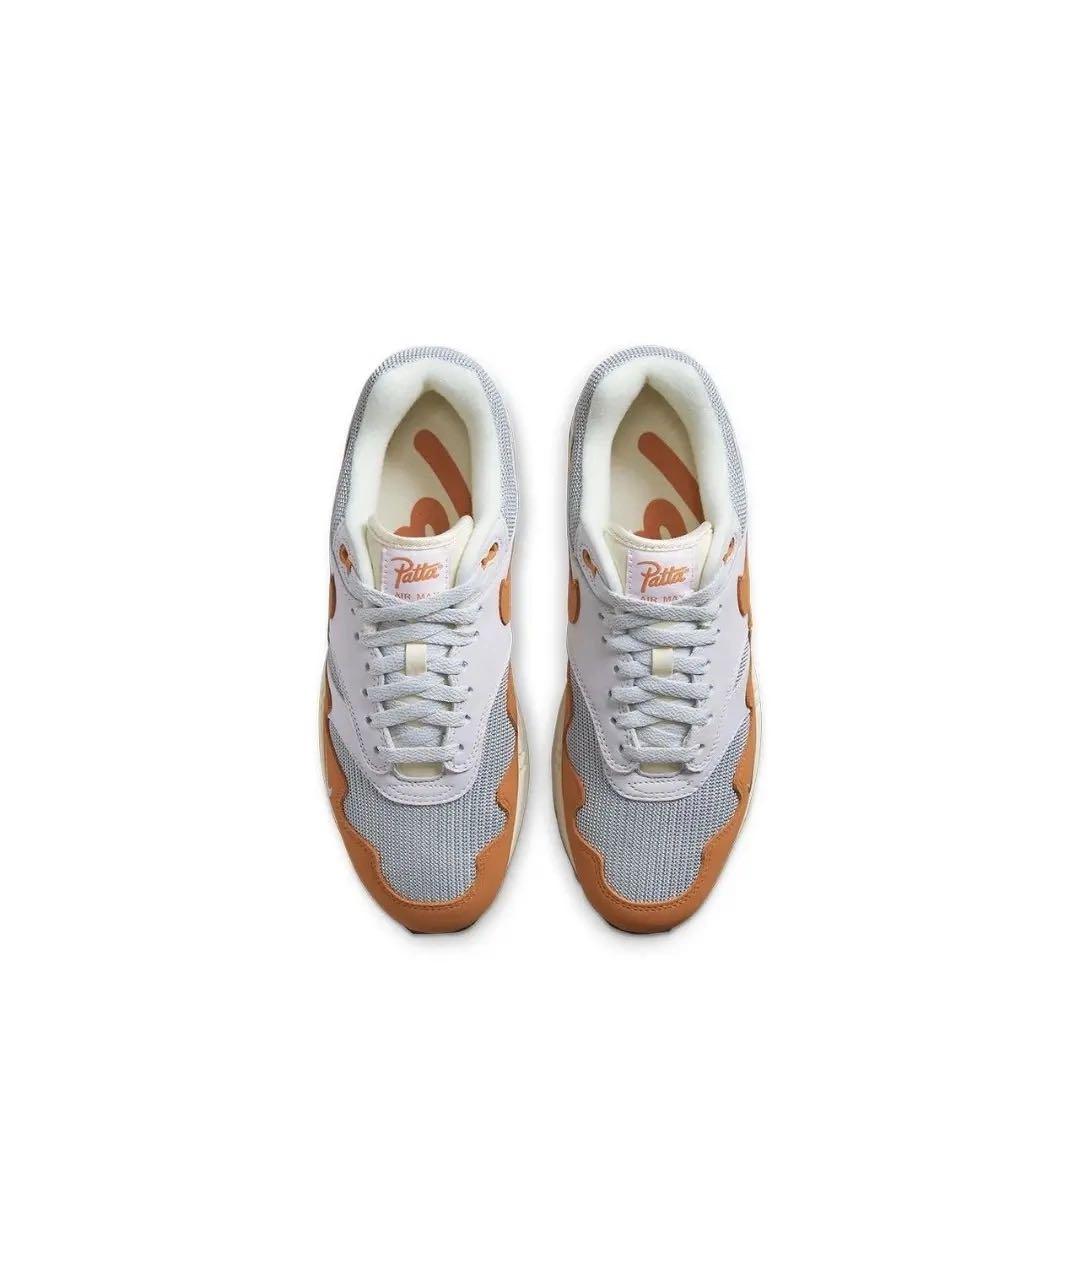 Patta Оранжевое нубуковые низкие кроссовки / кеды, фото 3